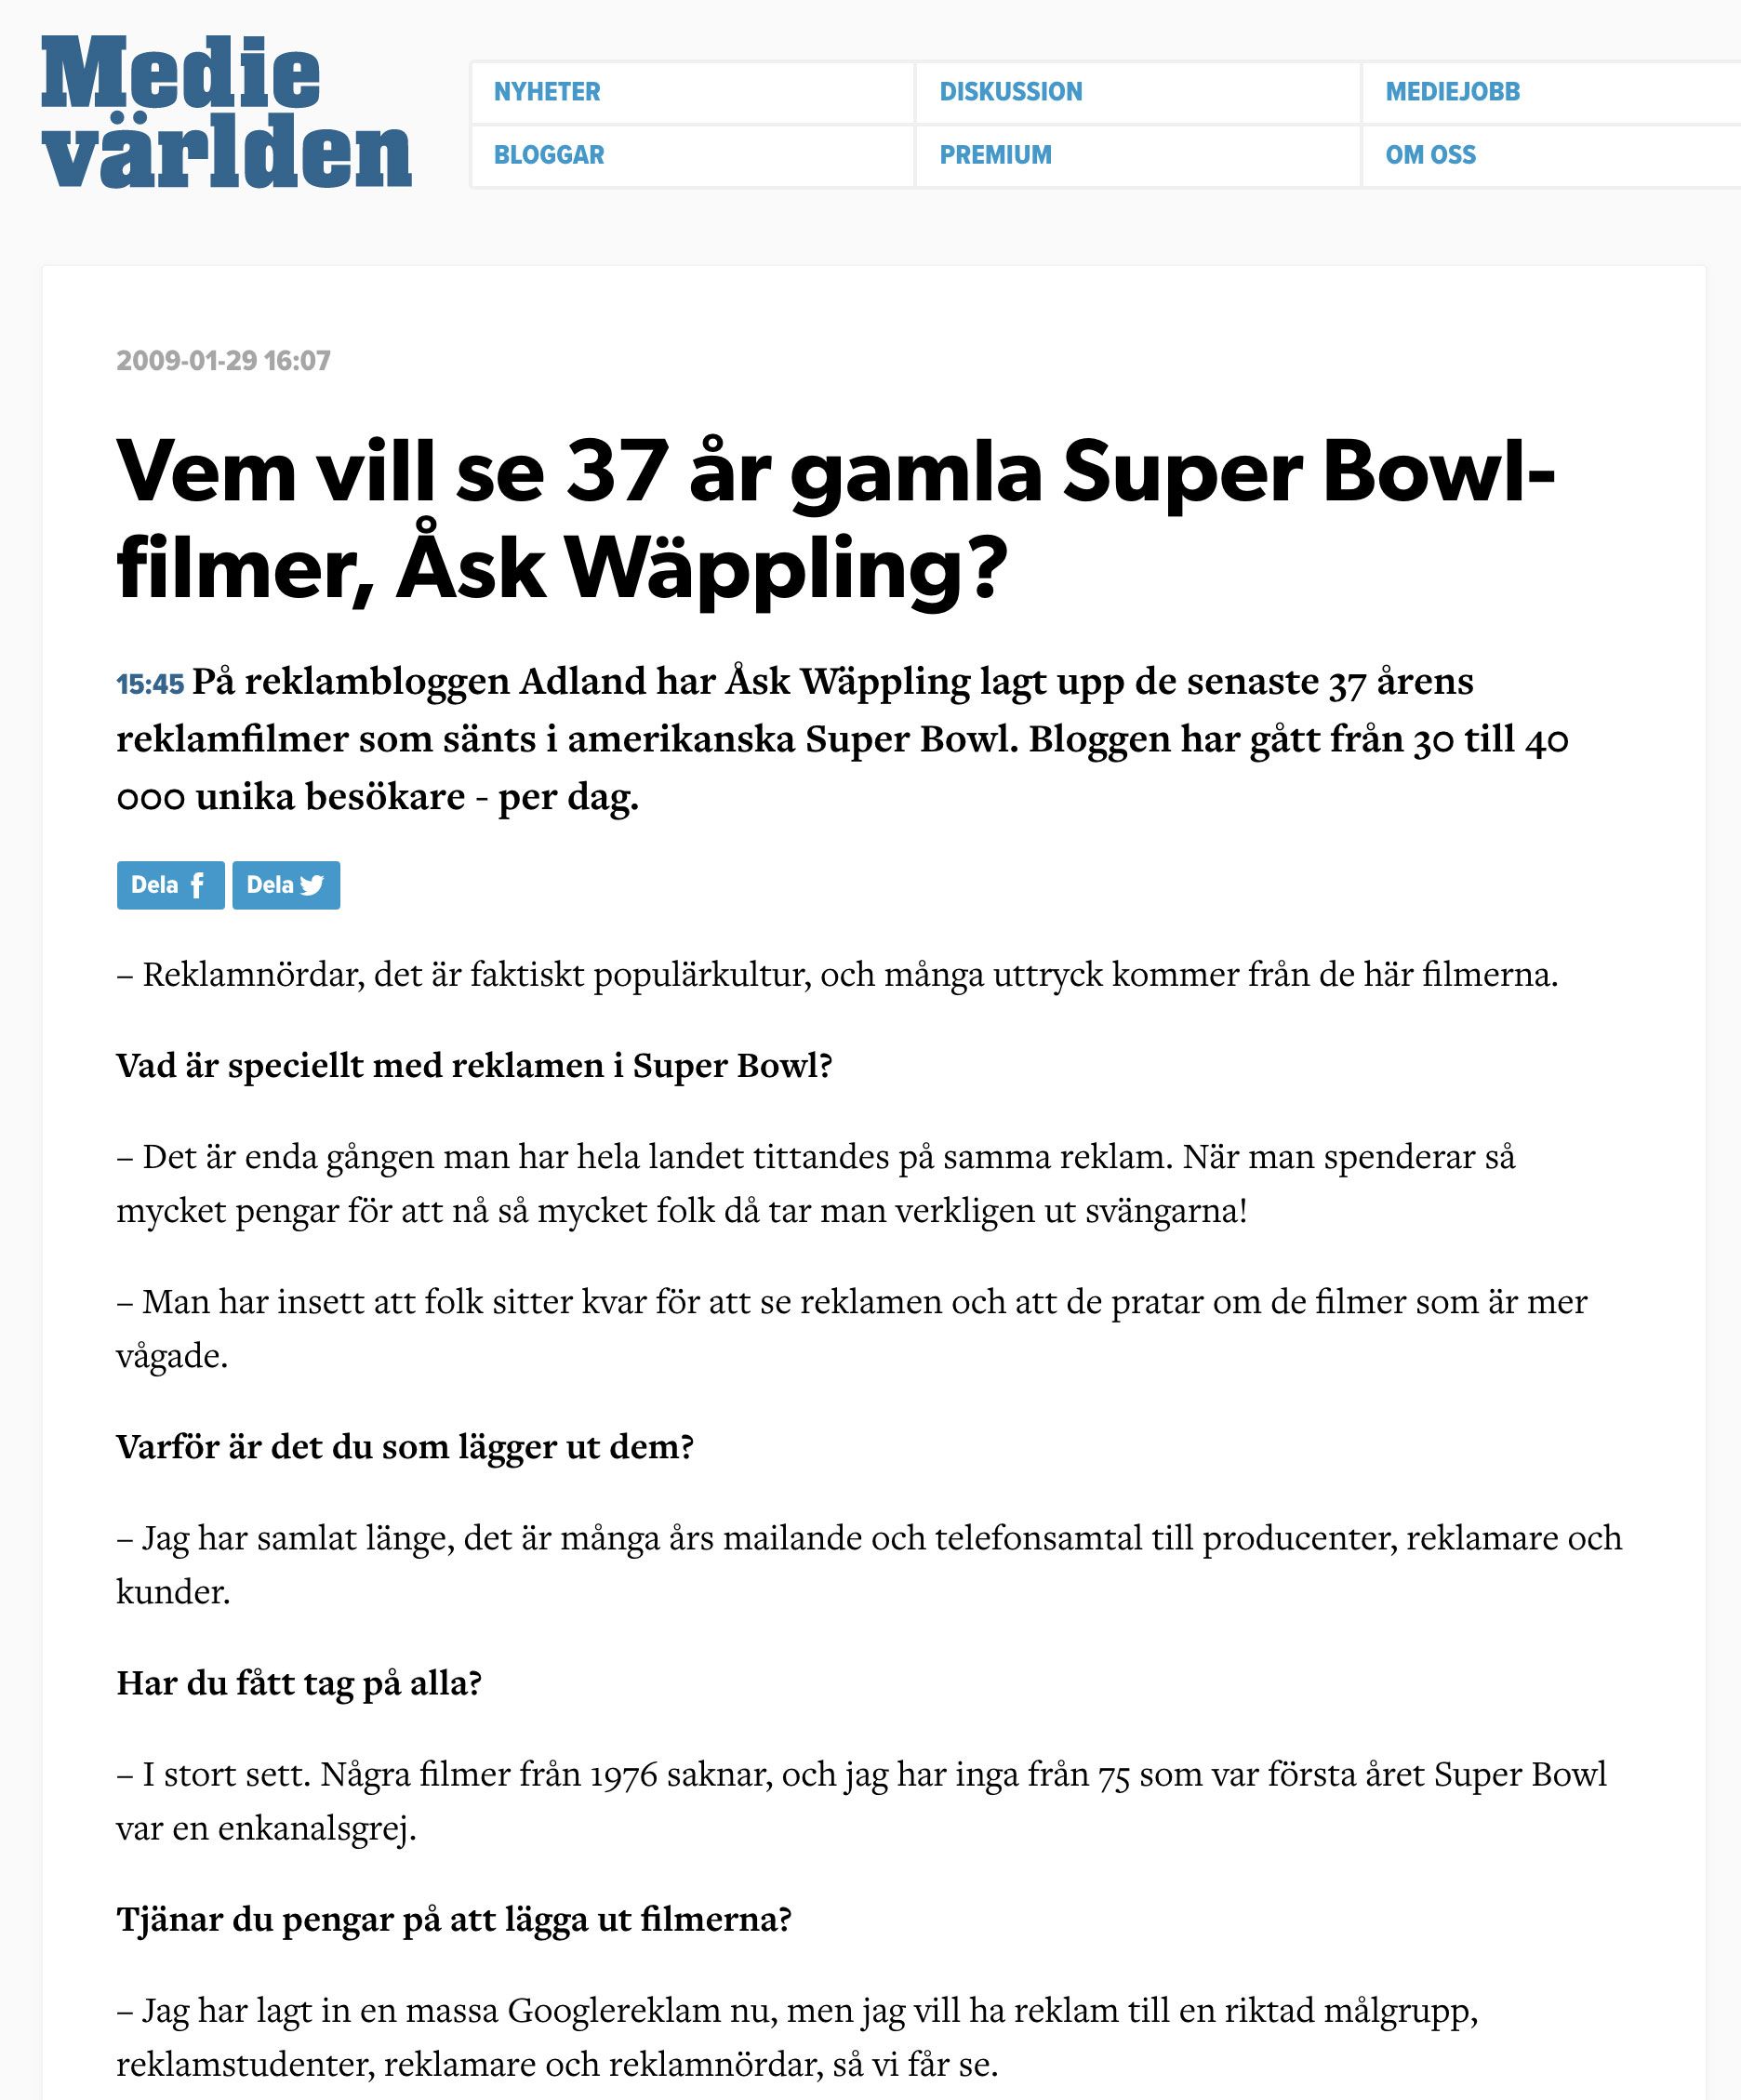 Vem vill se 37 år gamla Super Bowl-filmer, Åsk Wäppling?